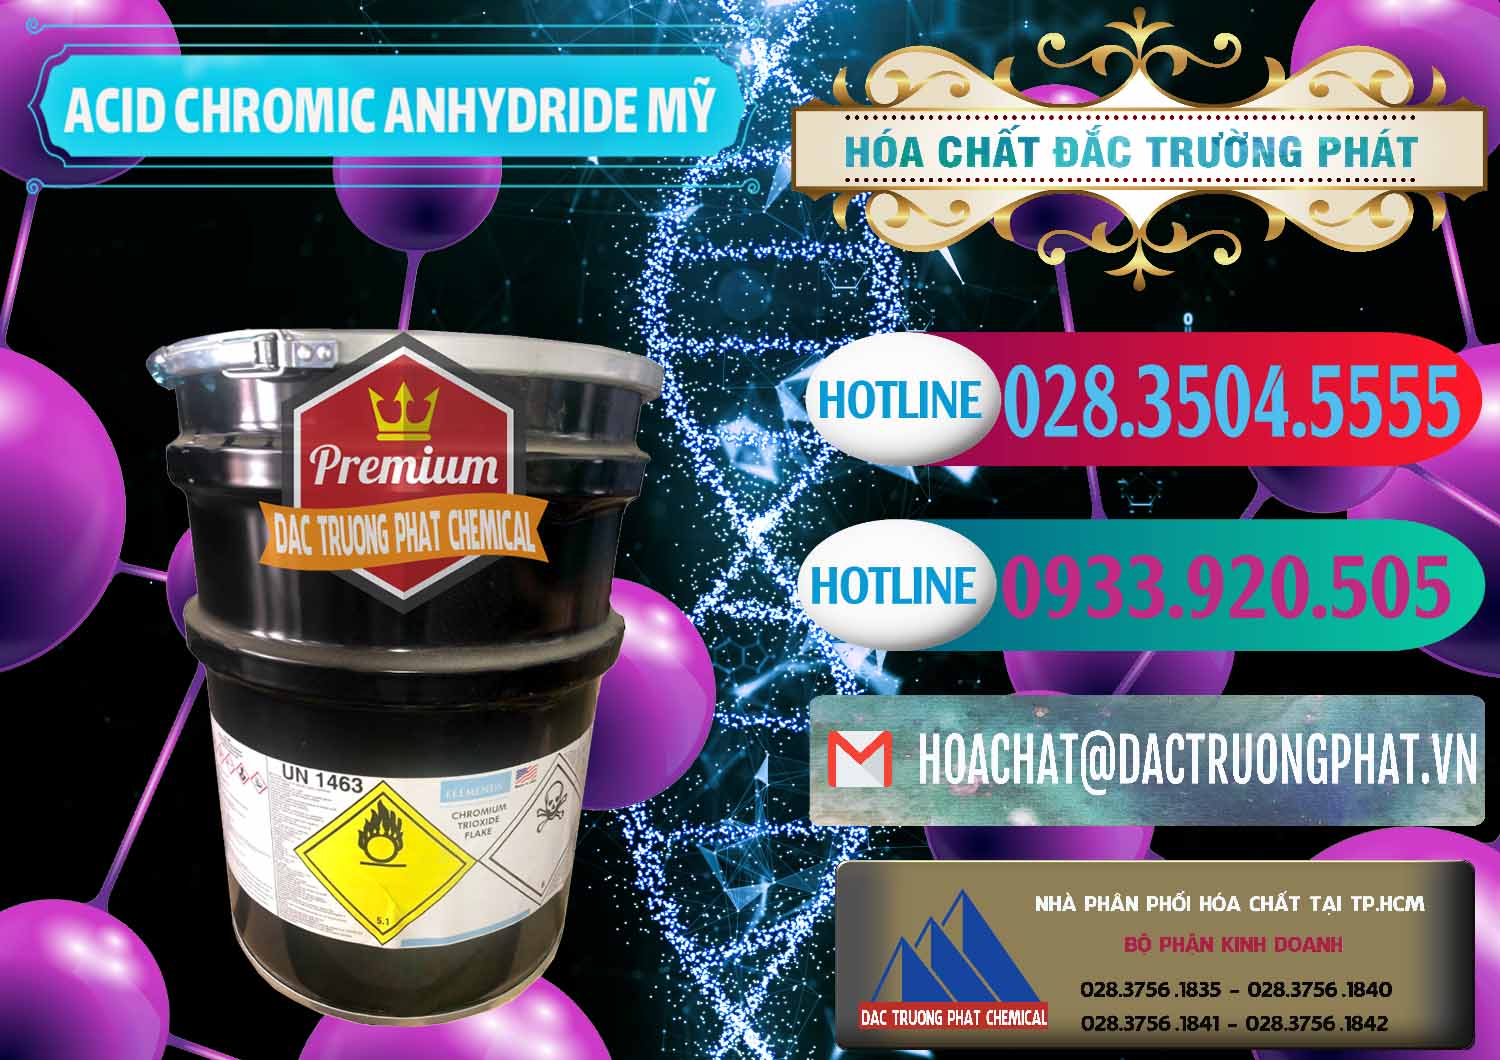 Nơi chuyên phân phối & bán Acid Chromic Anhydride - Cromic CRO3 USA Mỹ - 0364 - Nơi chuyên cung cấp - bán hóa chất tại TP.HCM - truongphat.vn